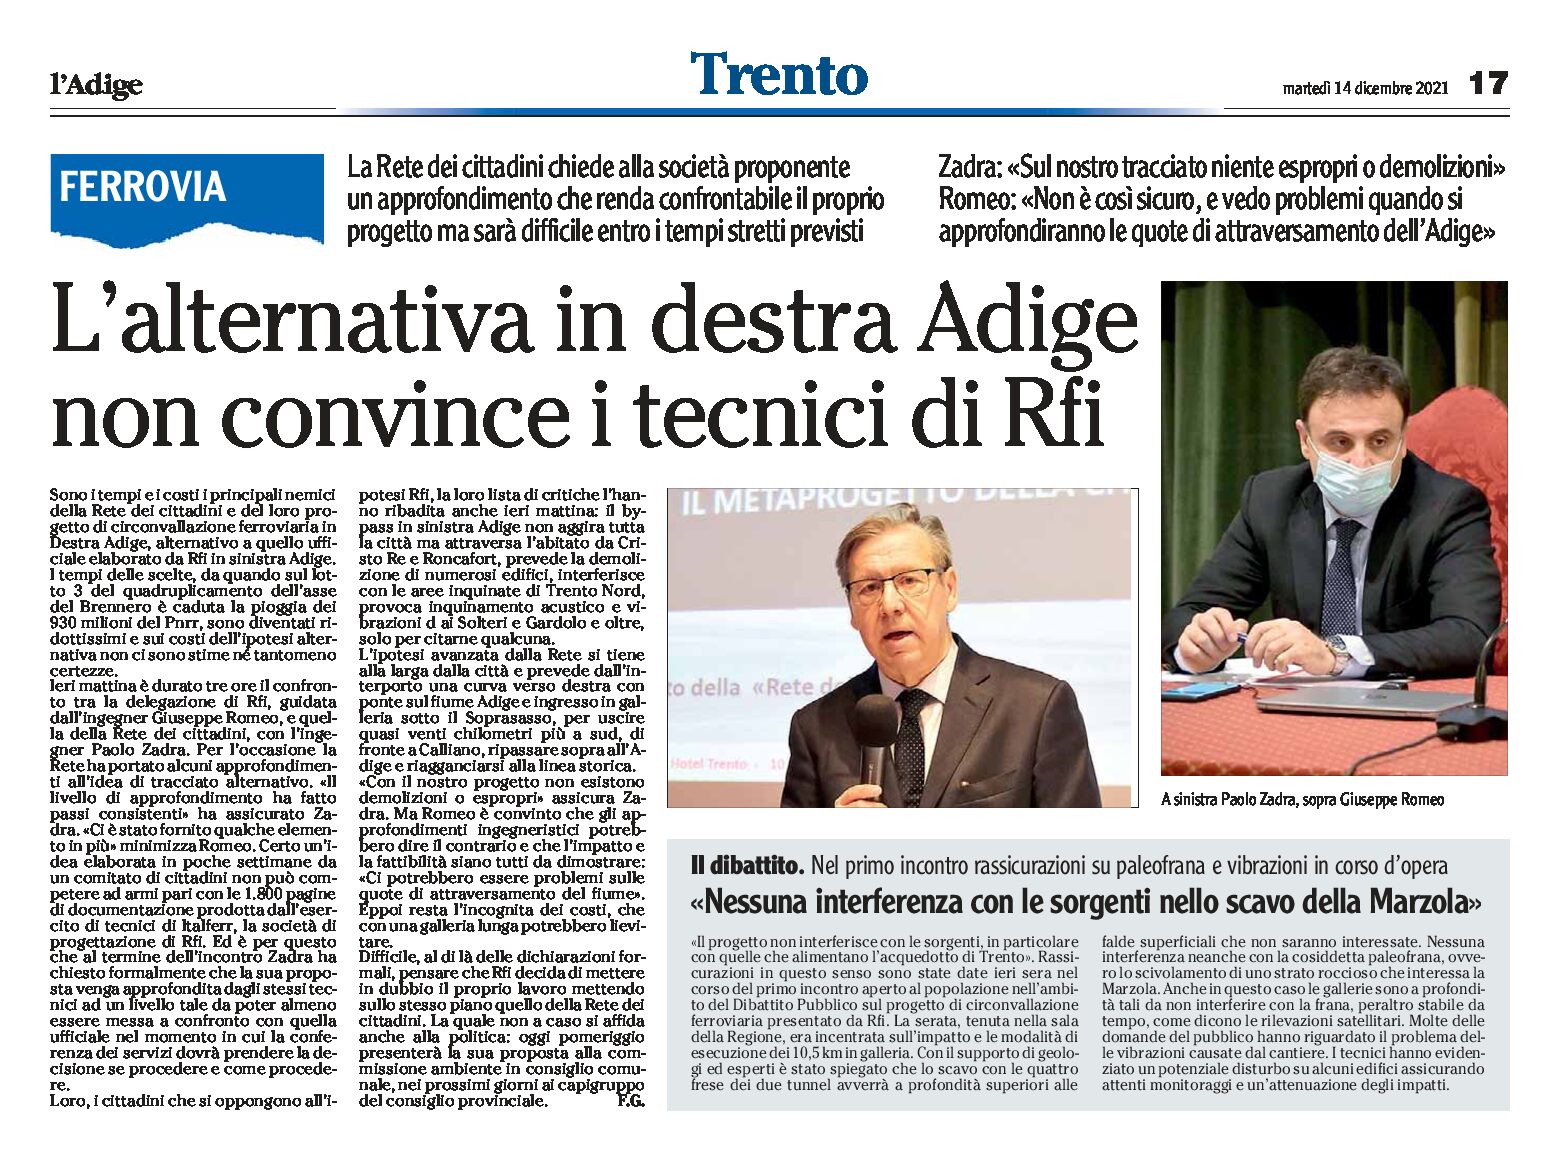 Trento, bypass: l’alternativa in destra Adige non convince i tecnici di Rfi